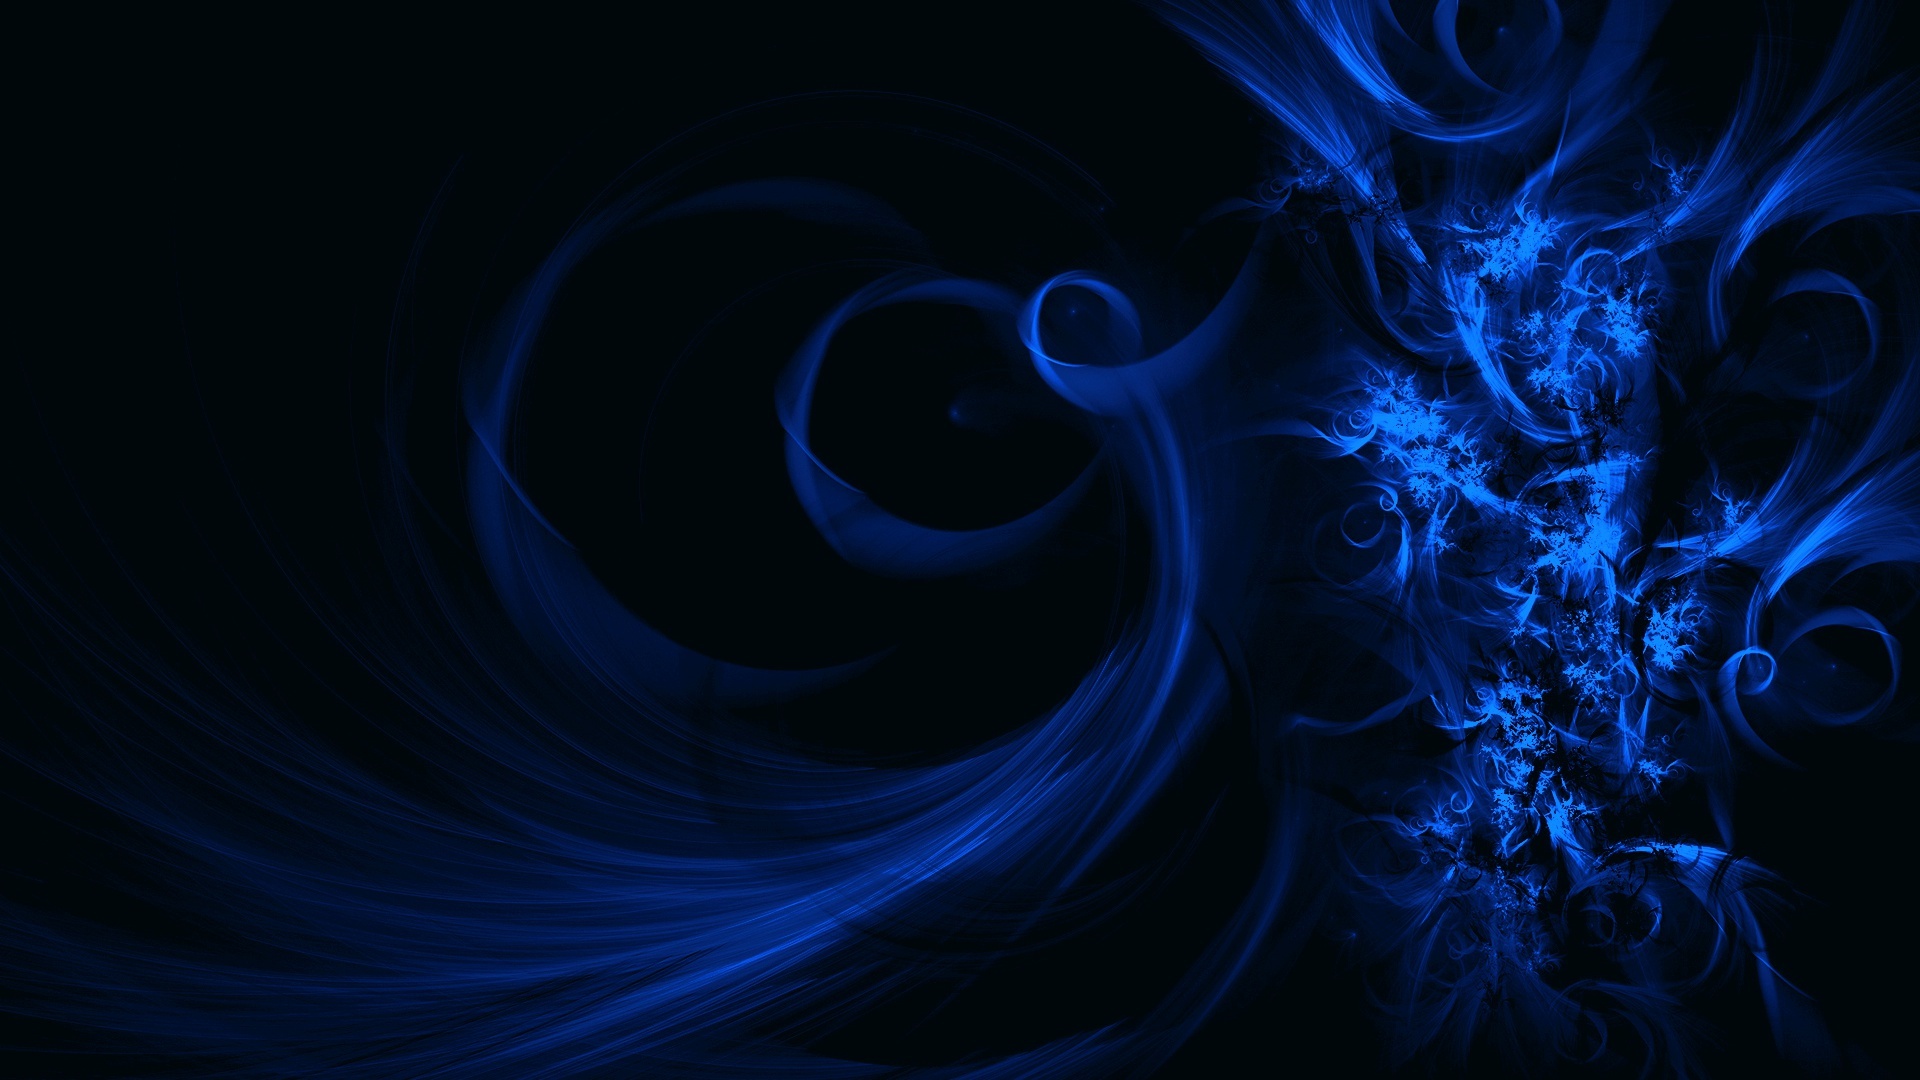 Swirl, Big blue swirl wallpapers, Most popular backgrounds, 1920x1080 Full HD Desktop